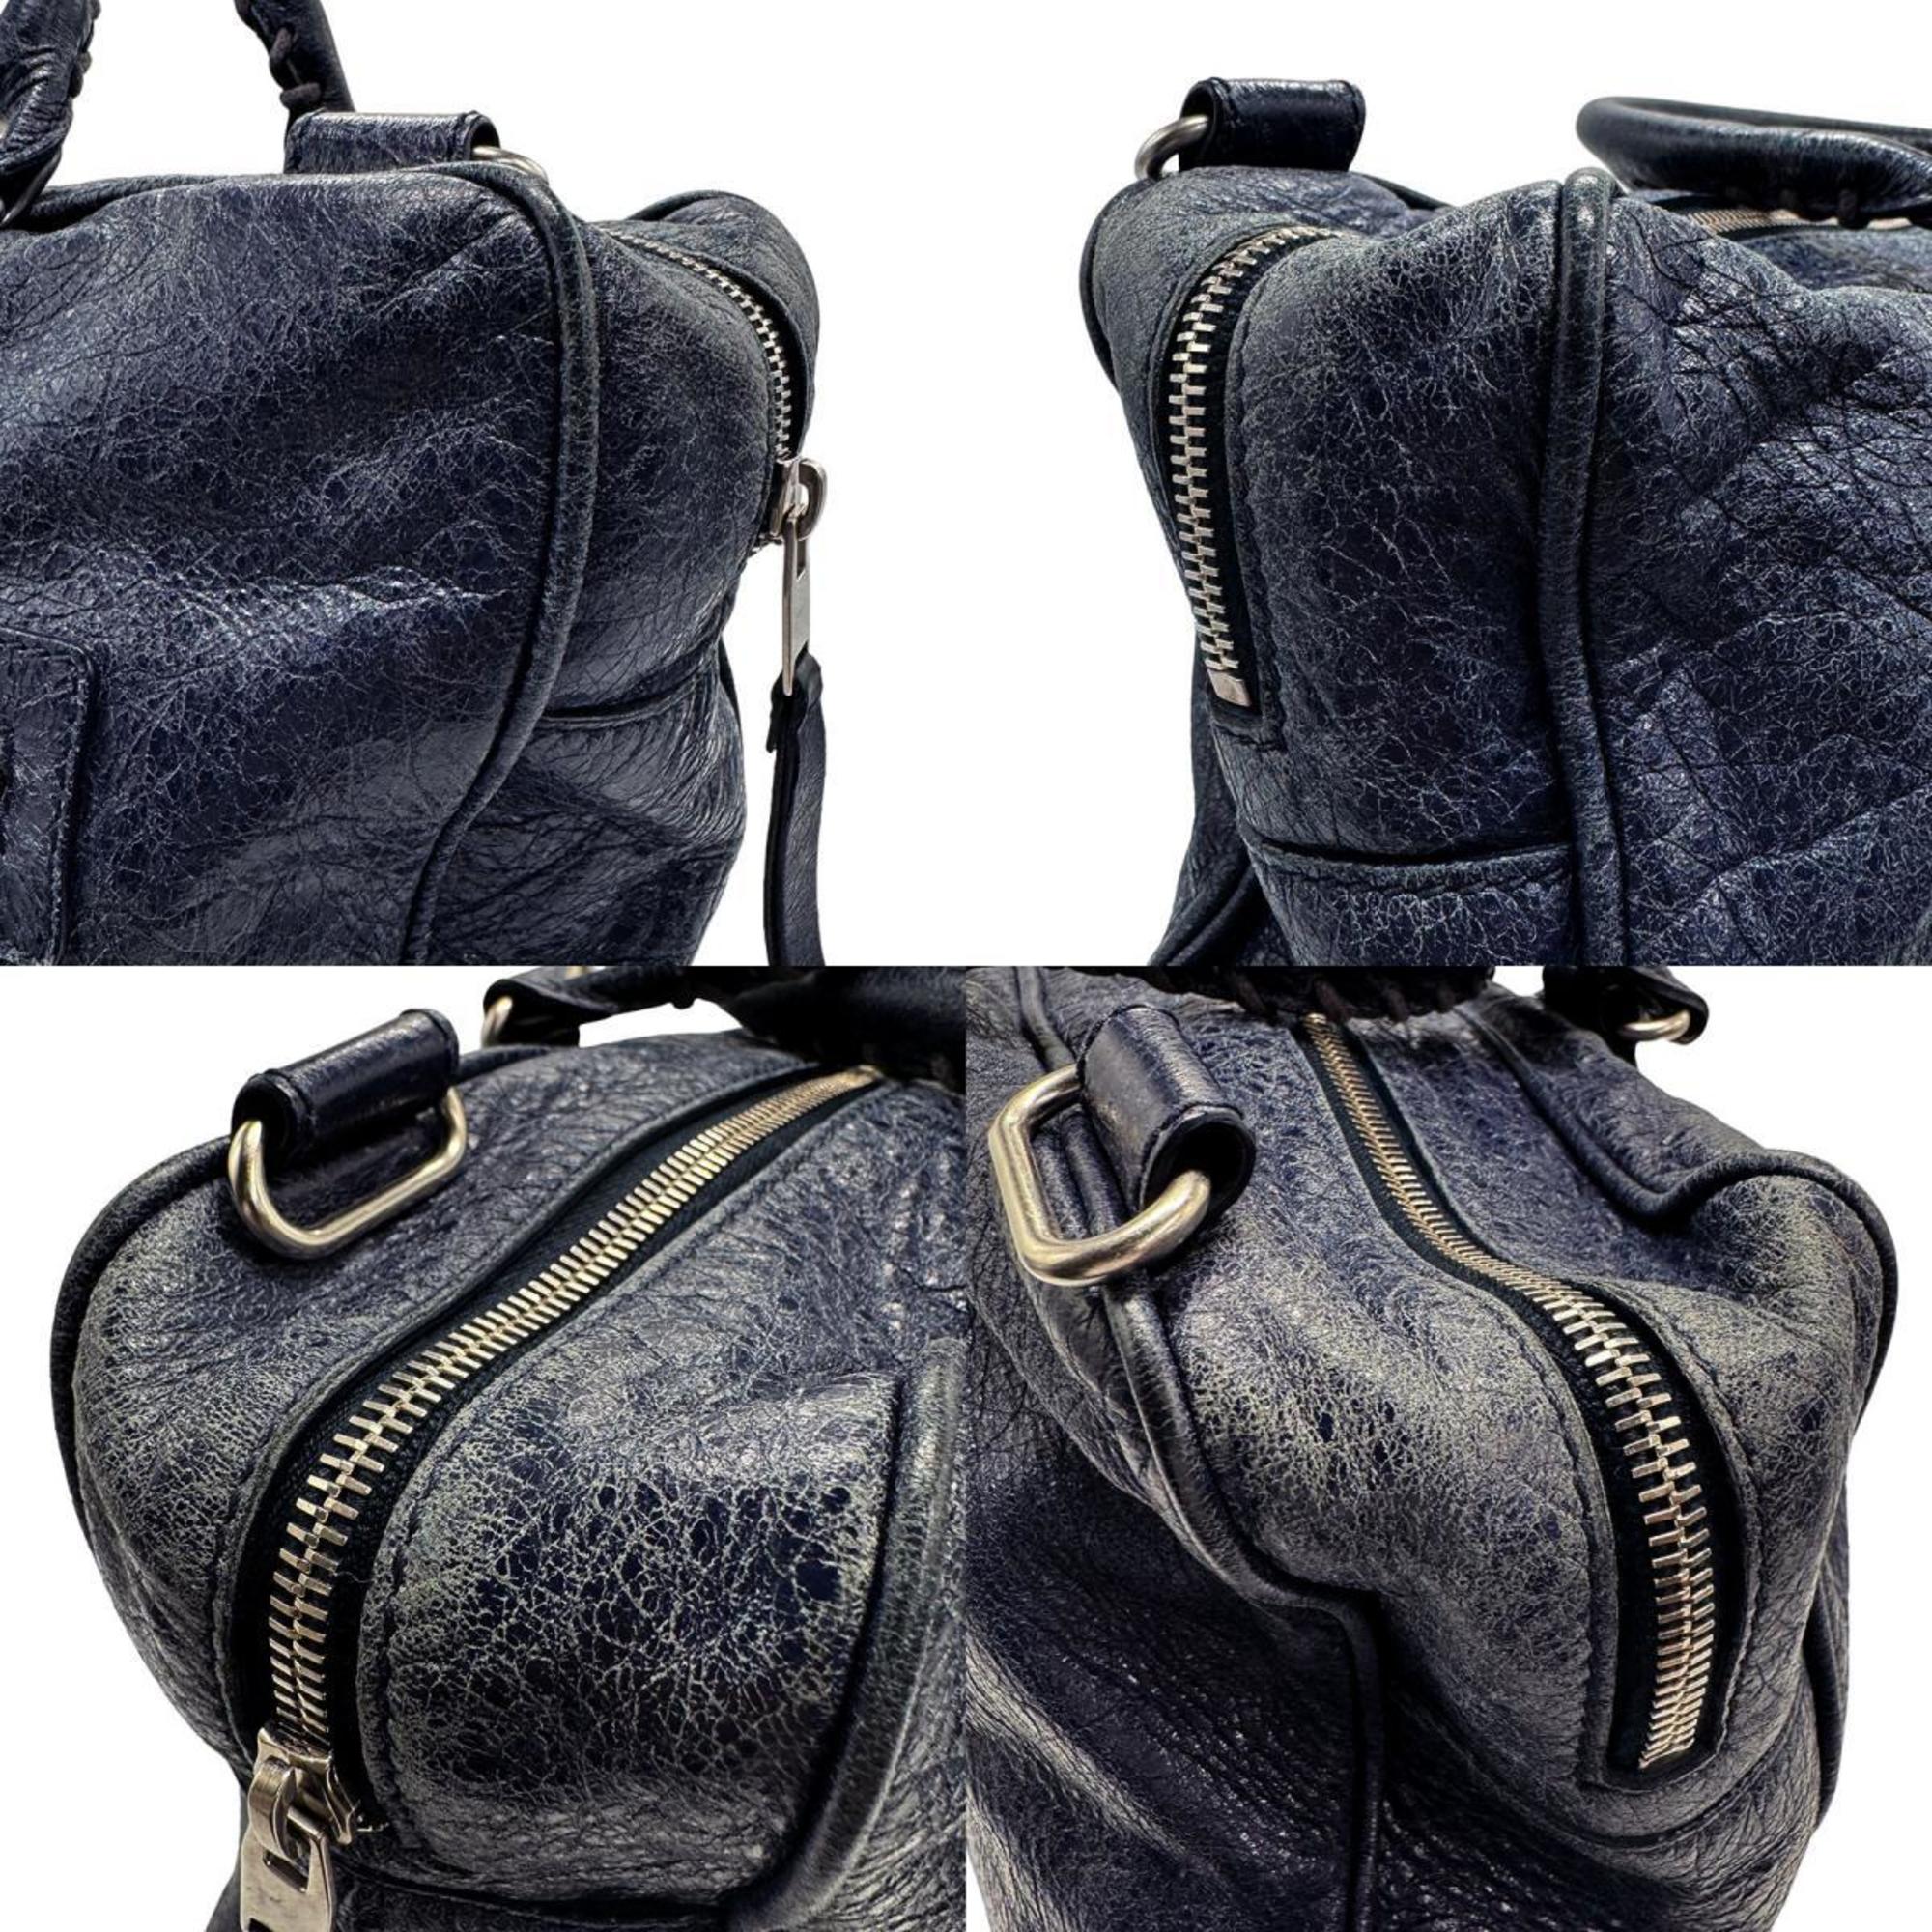 BALENCIAGA handbag shoulder bag leather navy silver women's z1404